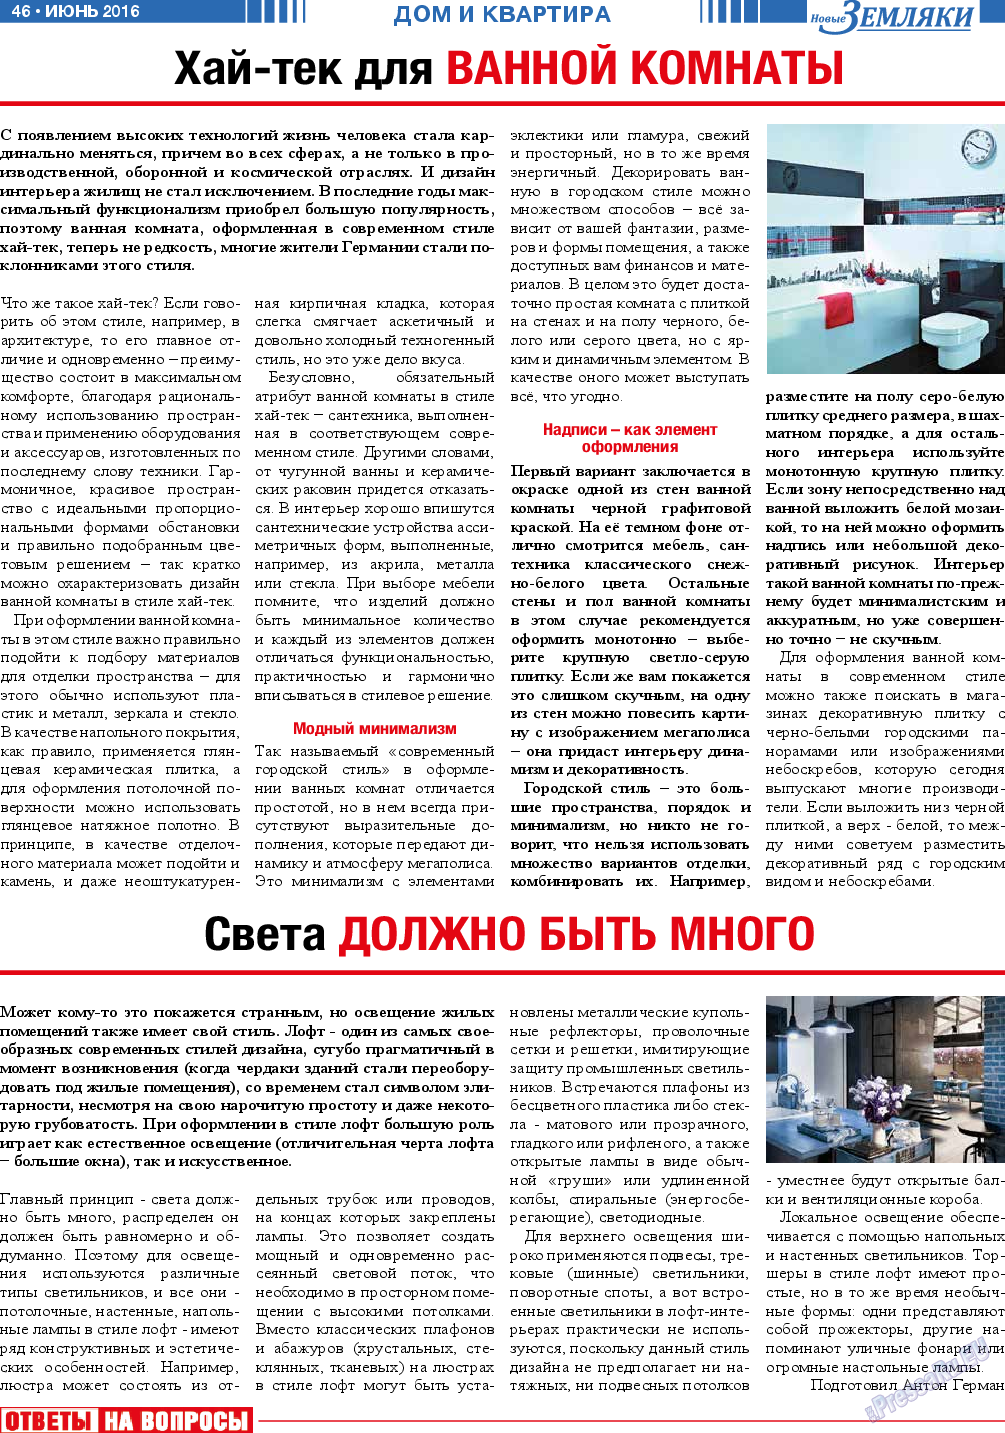 Новые Земляки, газета. 2016 №6 стр.46